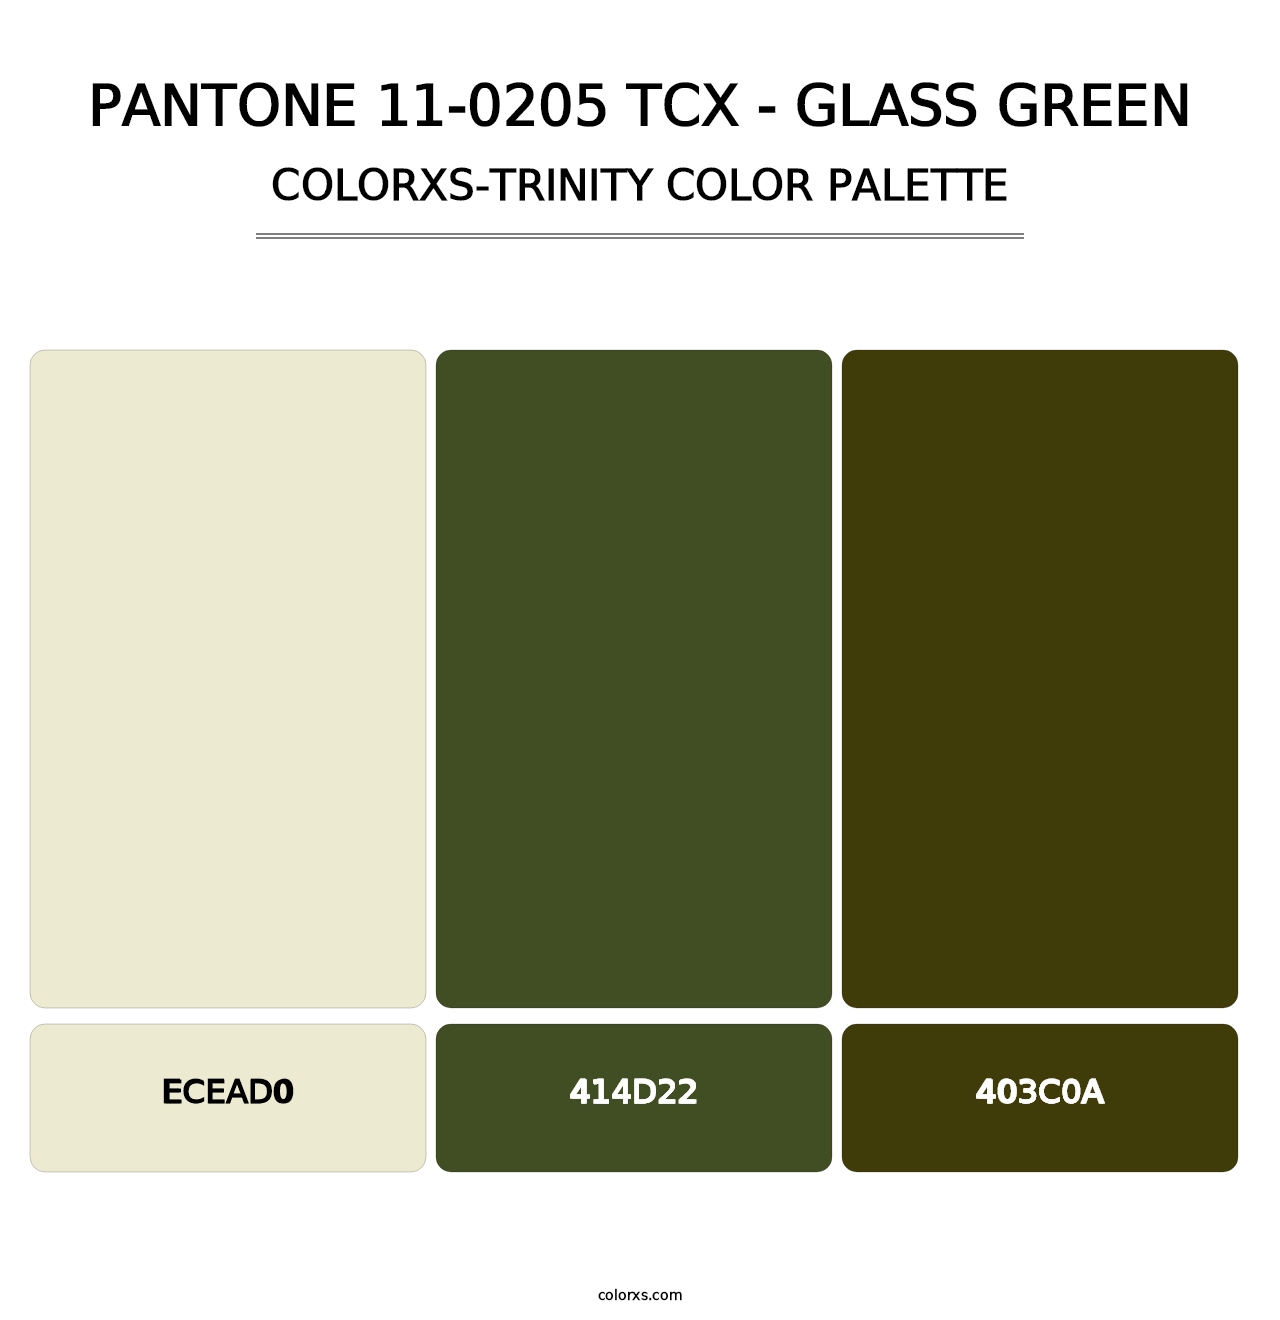 PANTONE 11-0205 TCX - Glass Green - Colorxs Trinity Palette